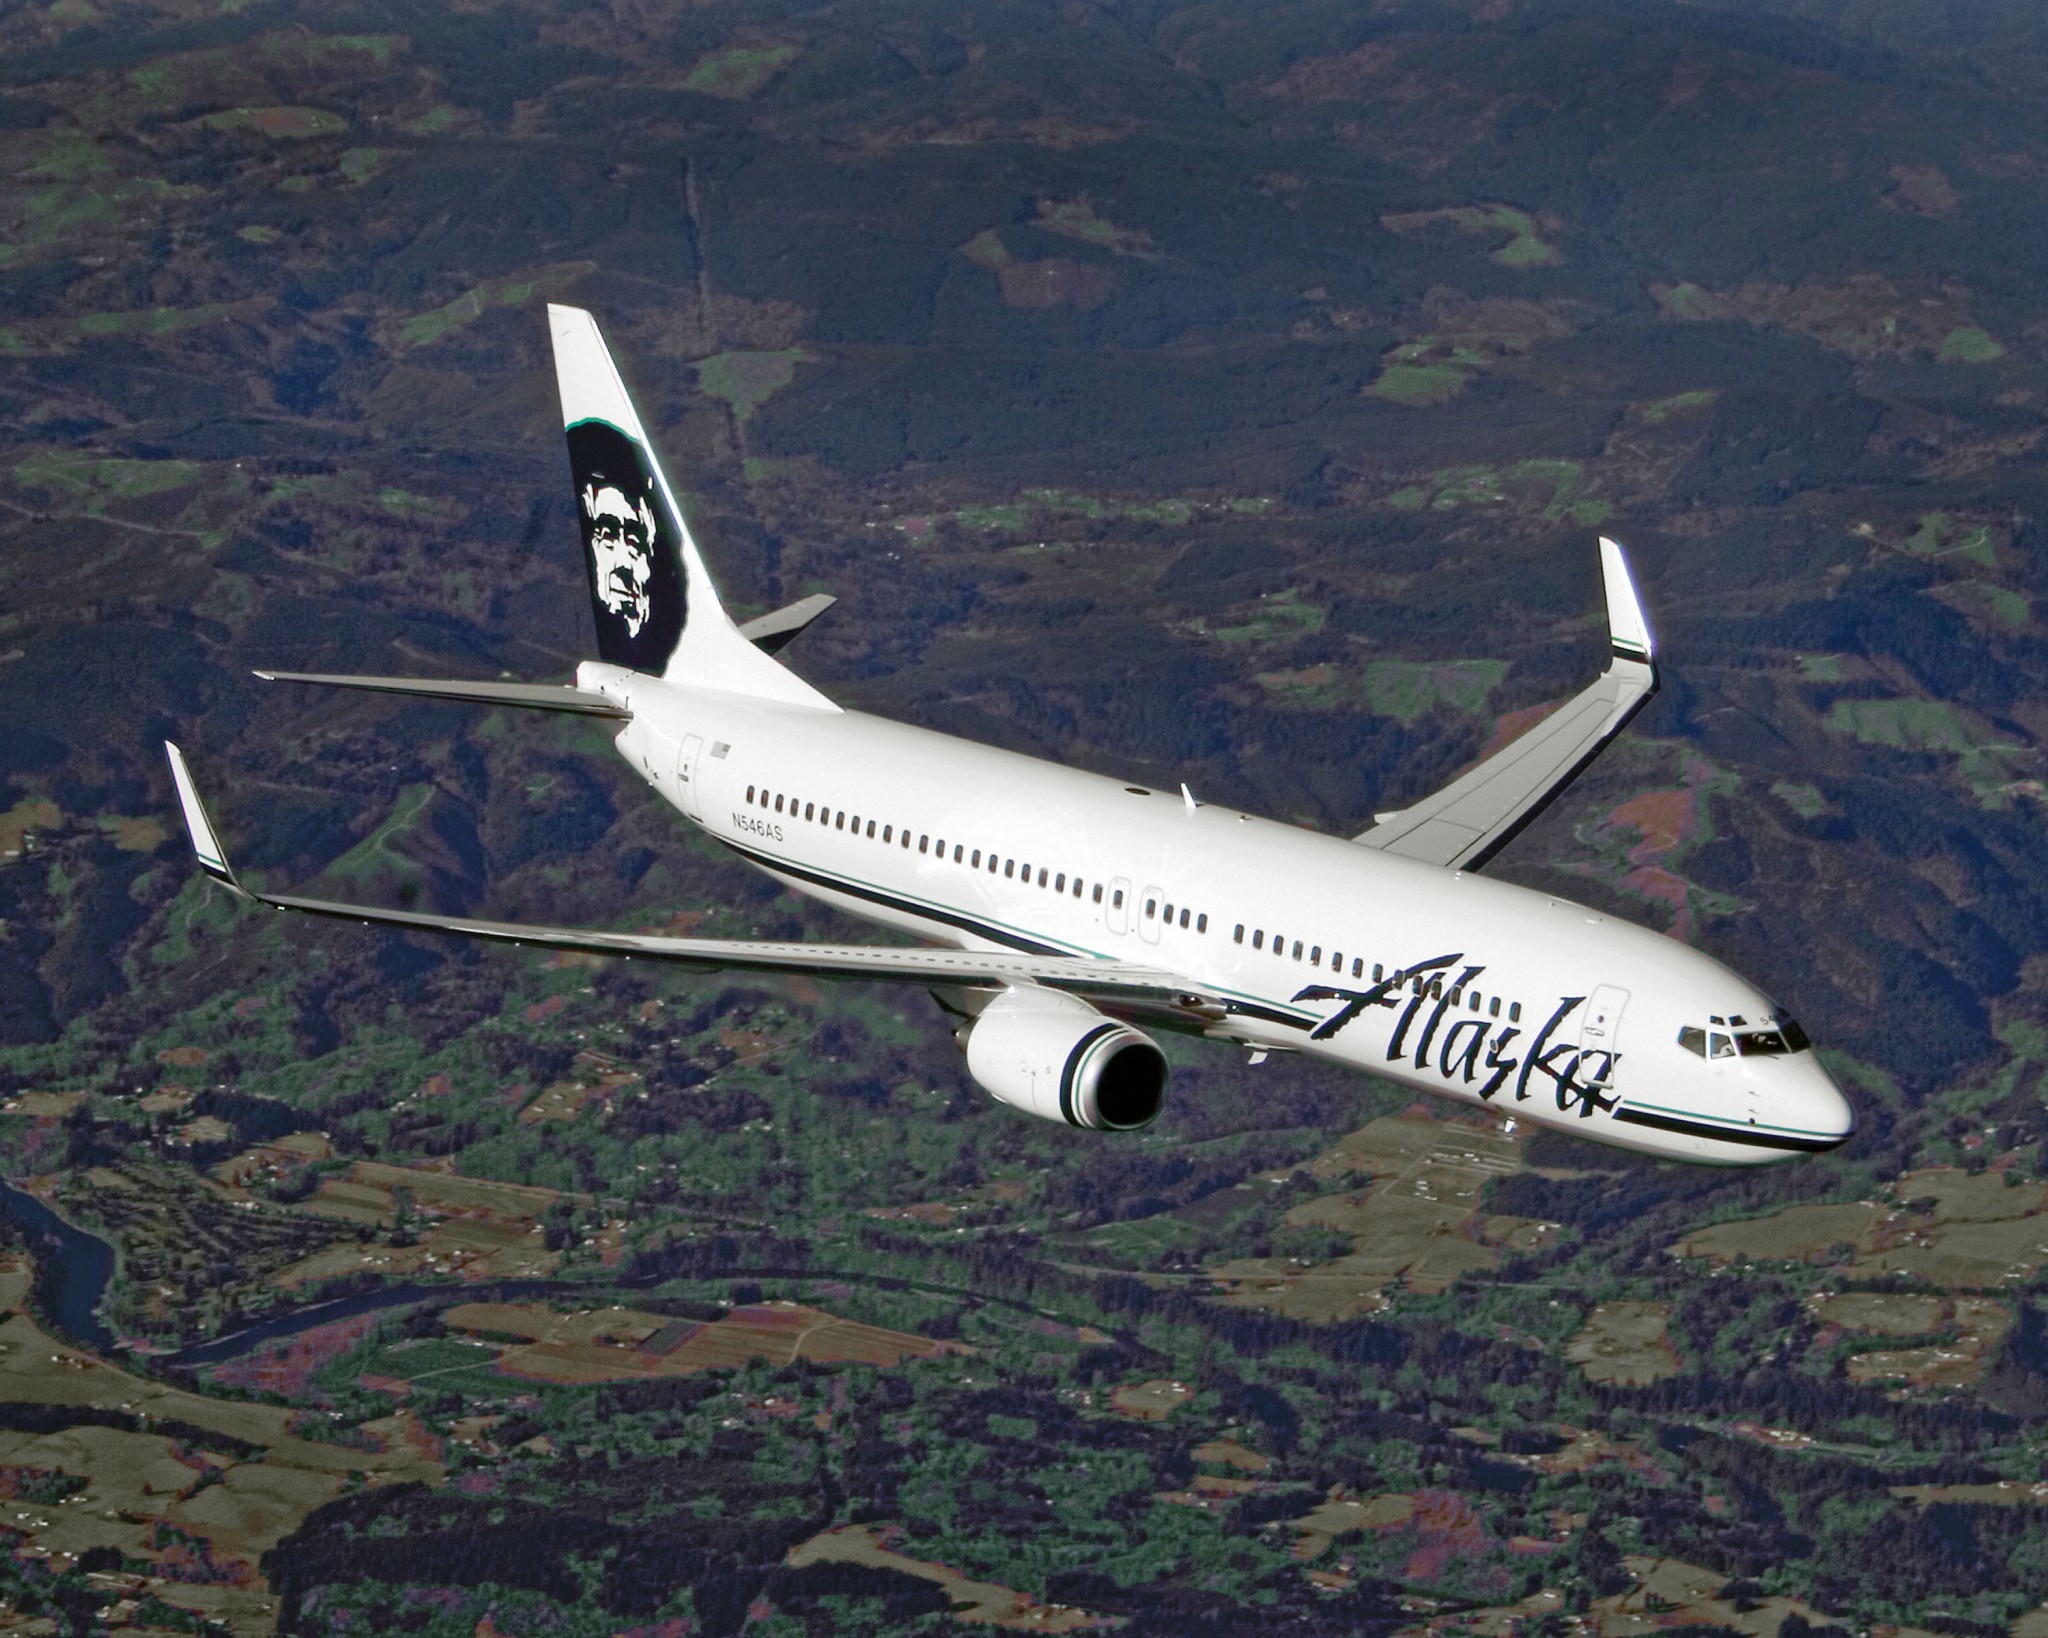 Alaska Air Group reports May 2018 operational results